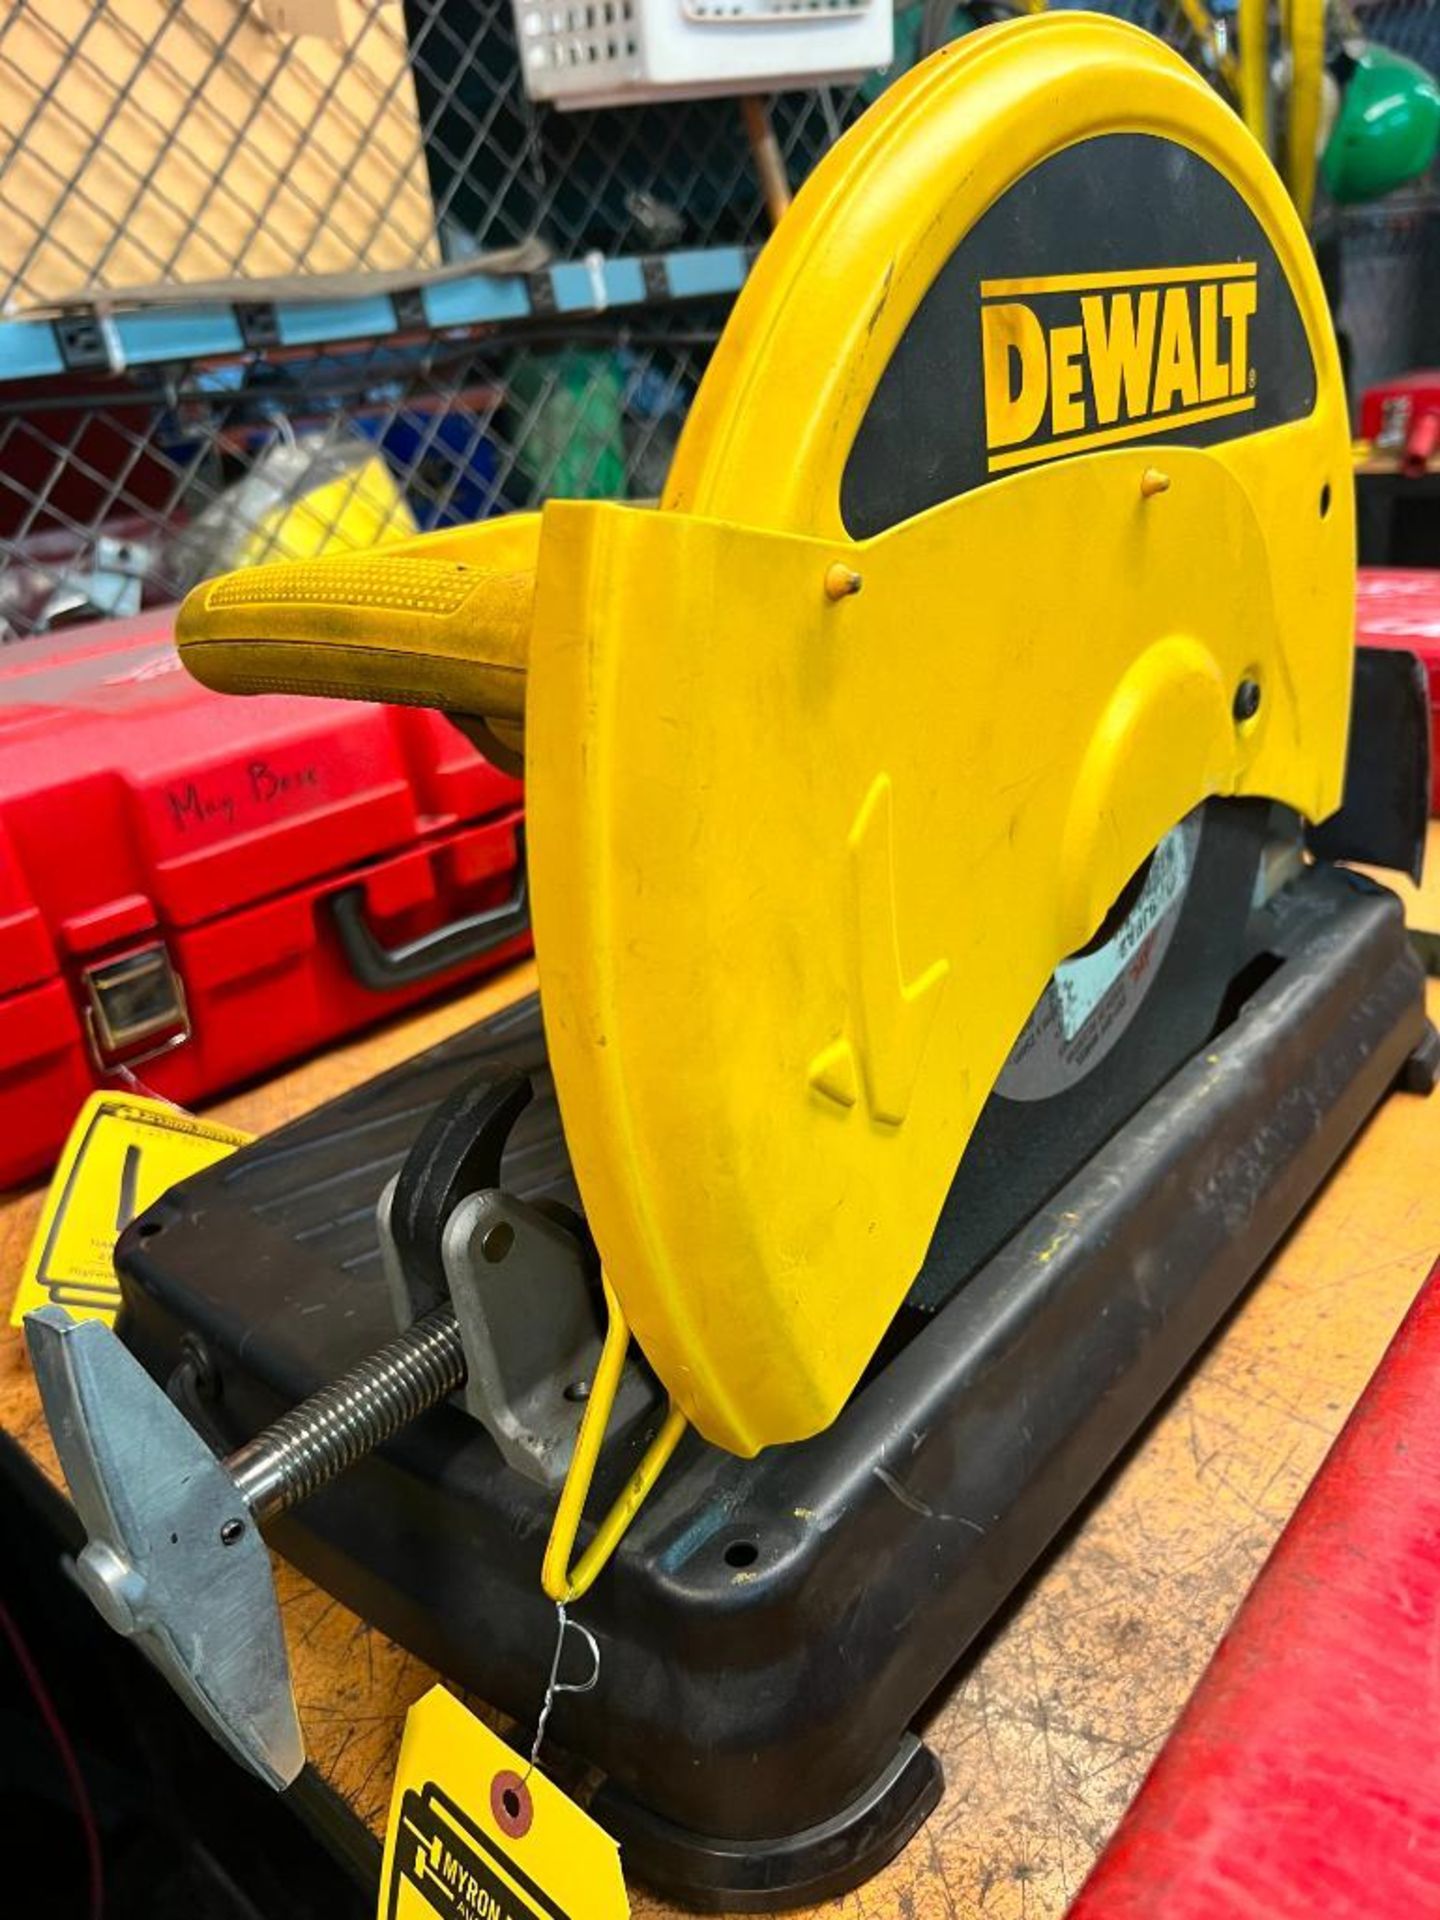 Dewalt Electric 14" Chop Saw, Model DW871, S/N 489344 - Image 2 of 3